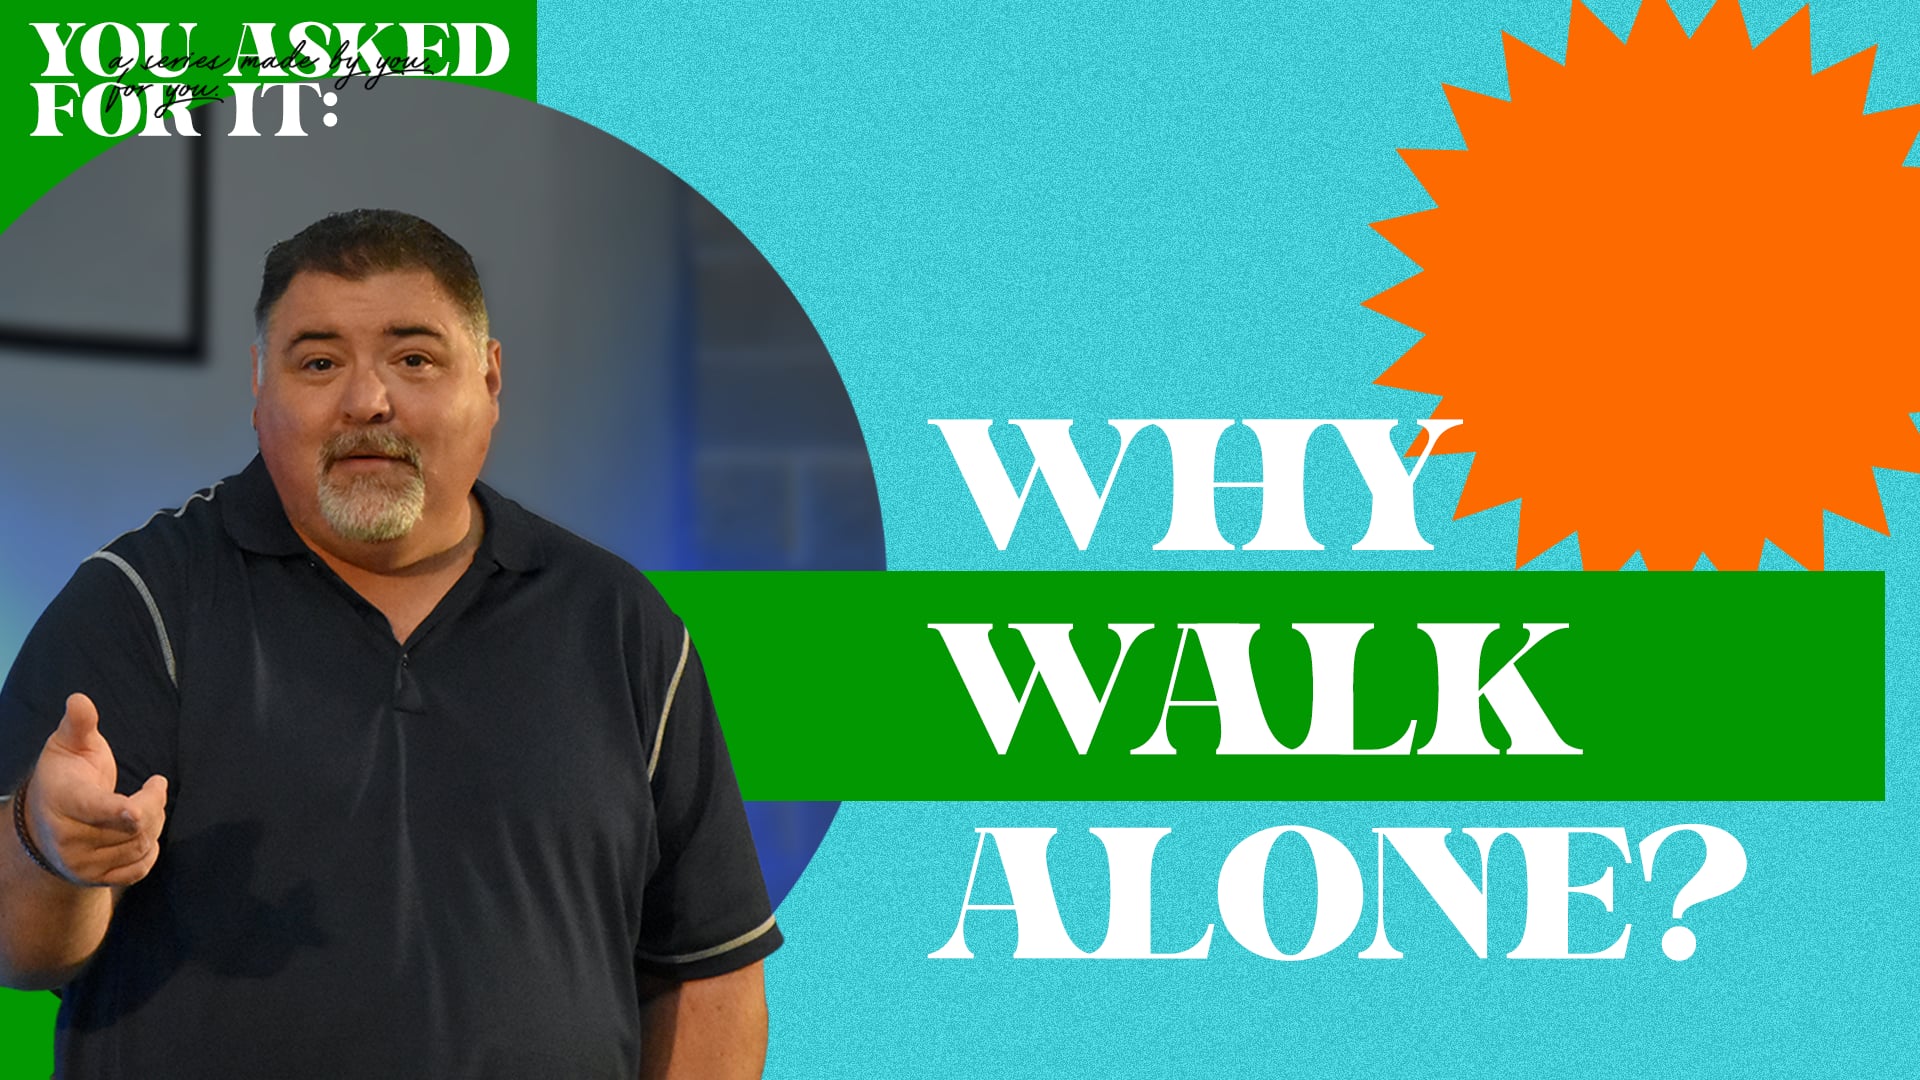 Why Walk Alone?